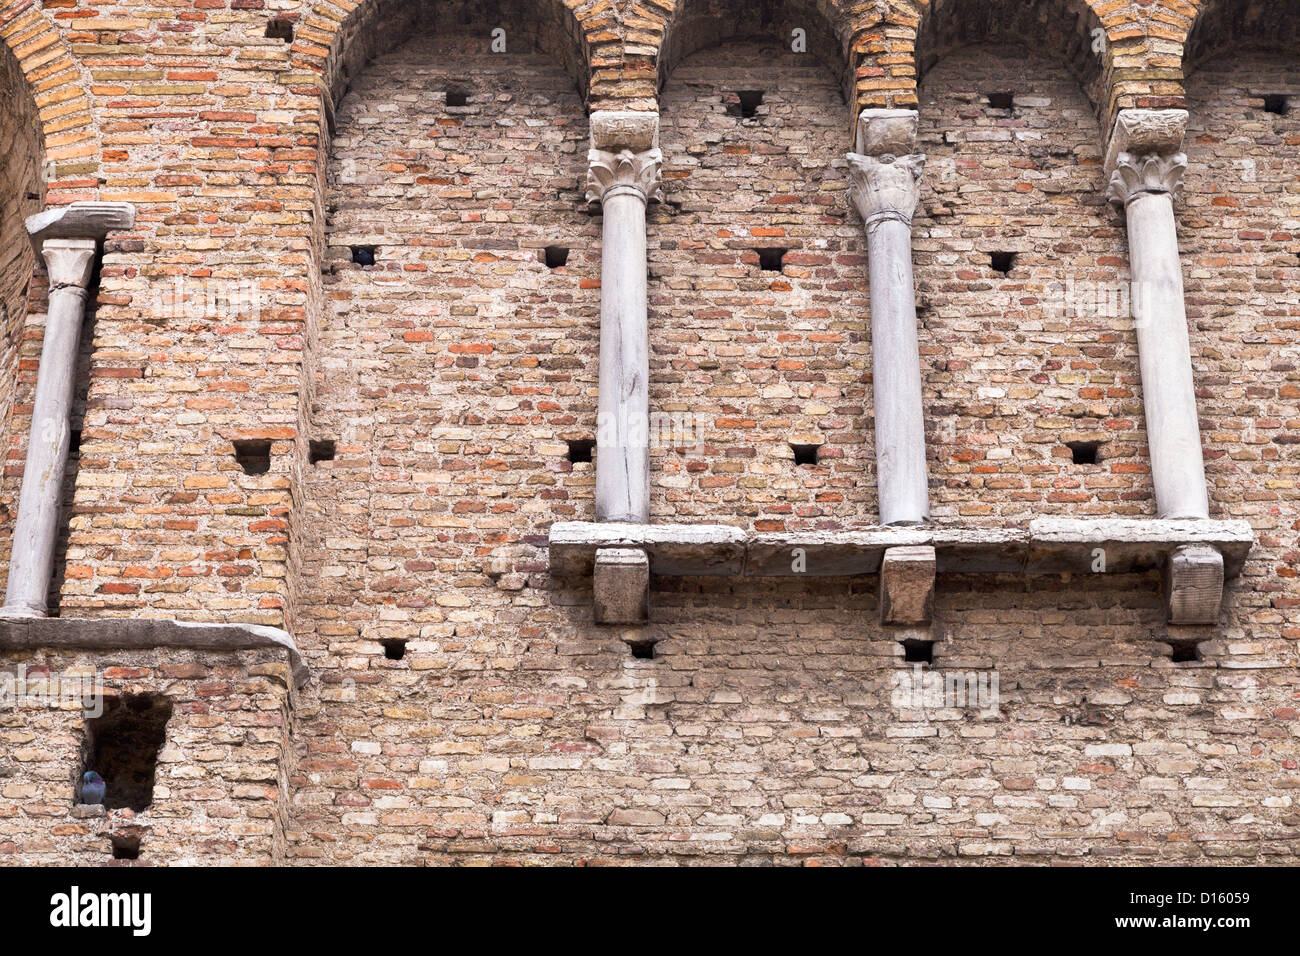 brick wall of theodoric palace in Ravenna, Italy Stock Photo